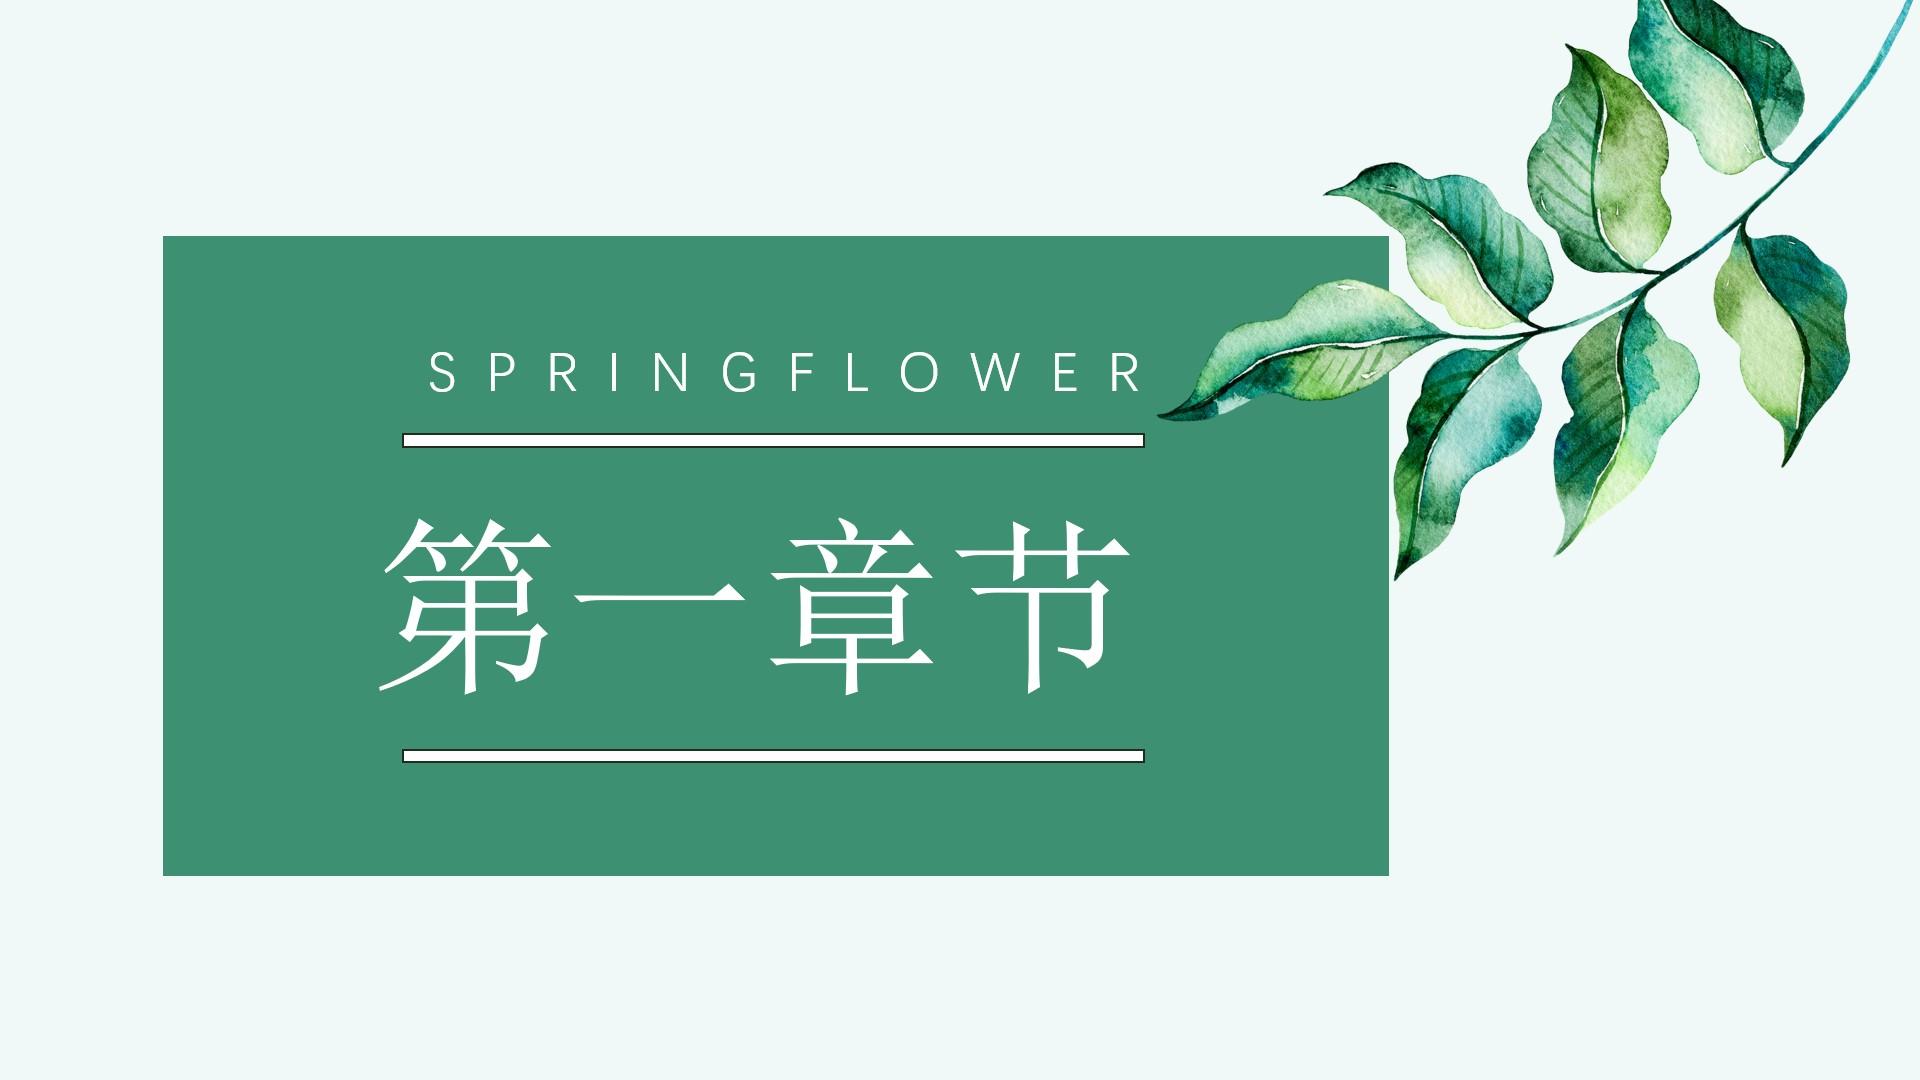 教育教学青色白色springflower云素材PPT模板1672509090106